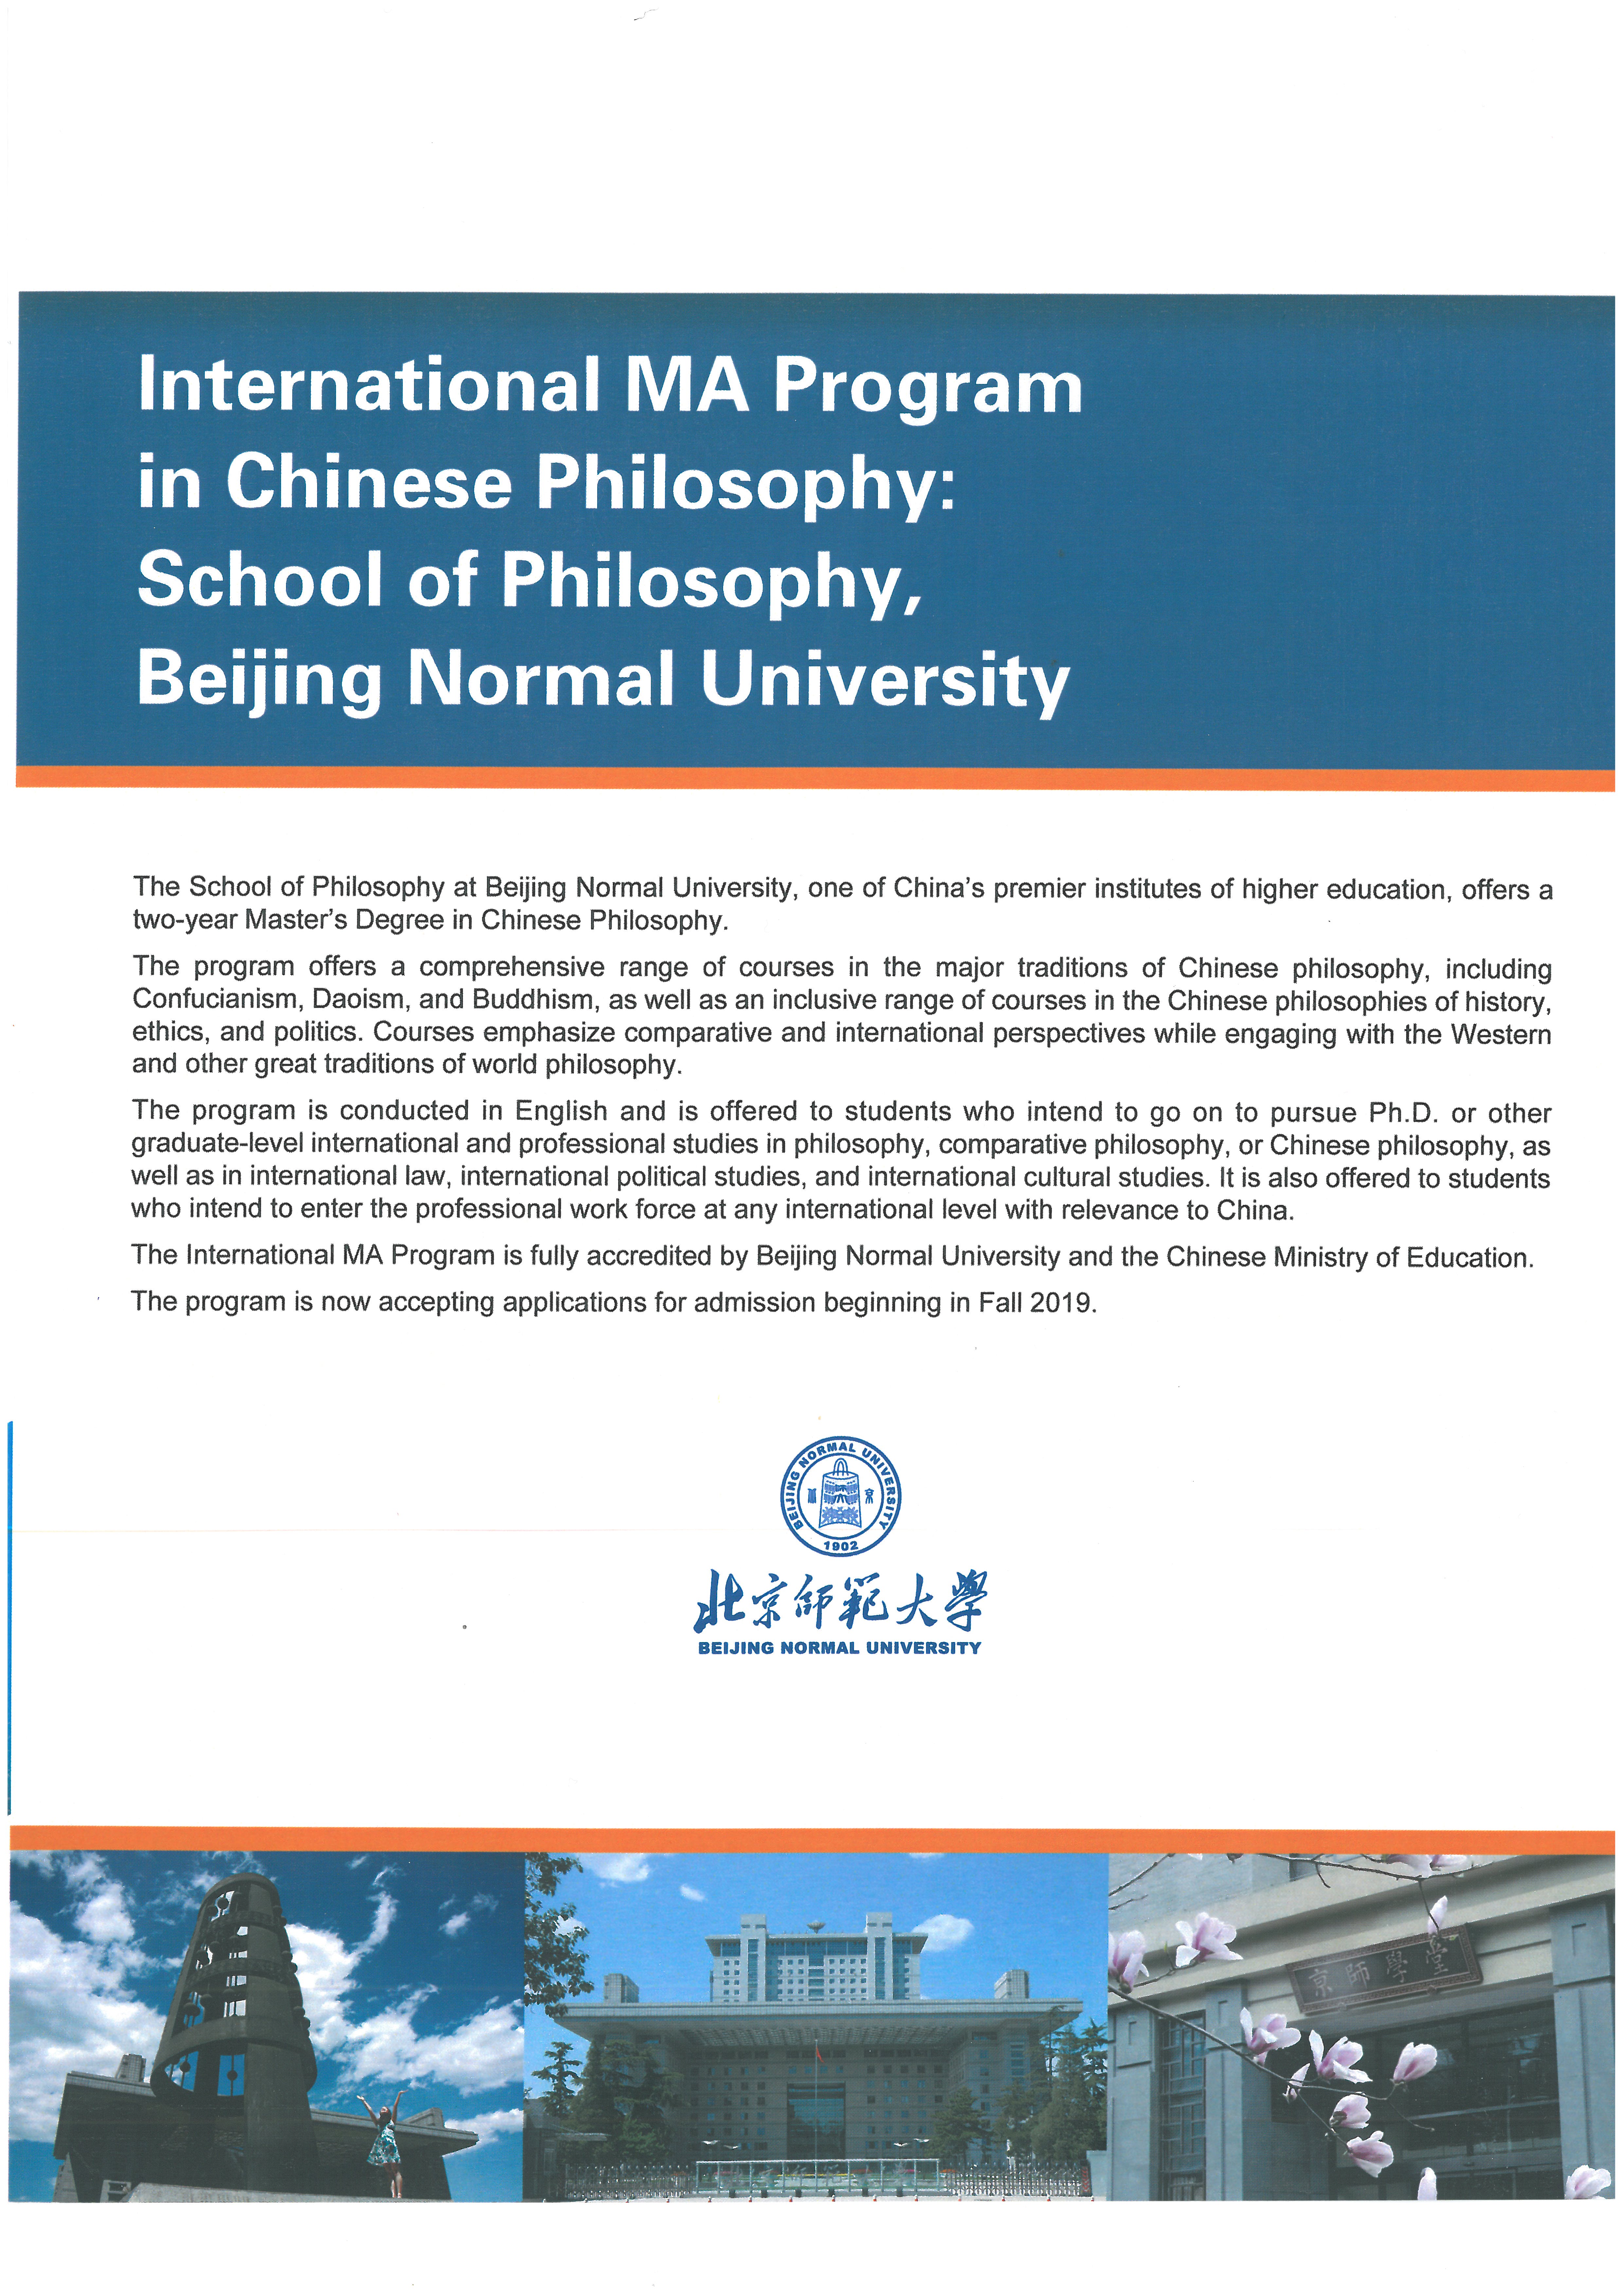 Philosophy Summer School  01-15 July 2019, Beijing